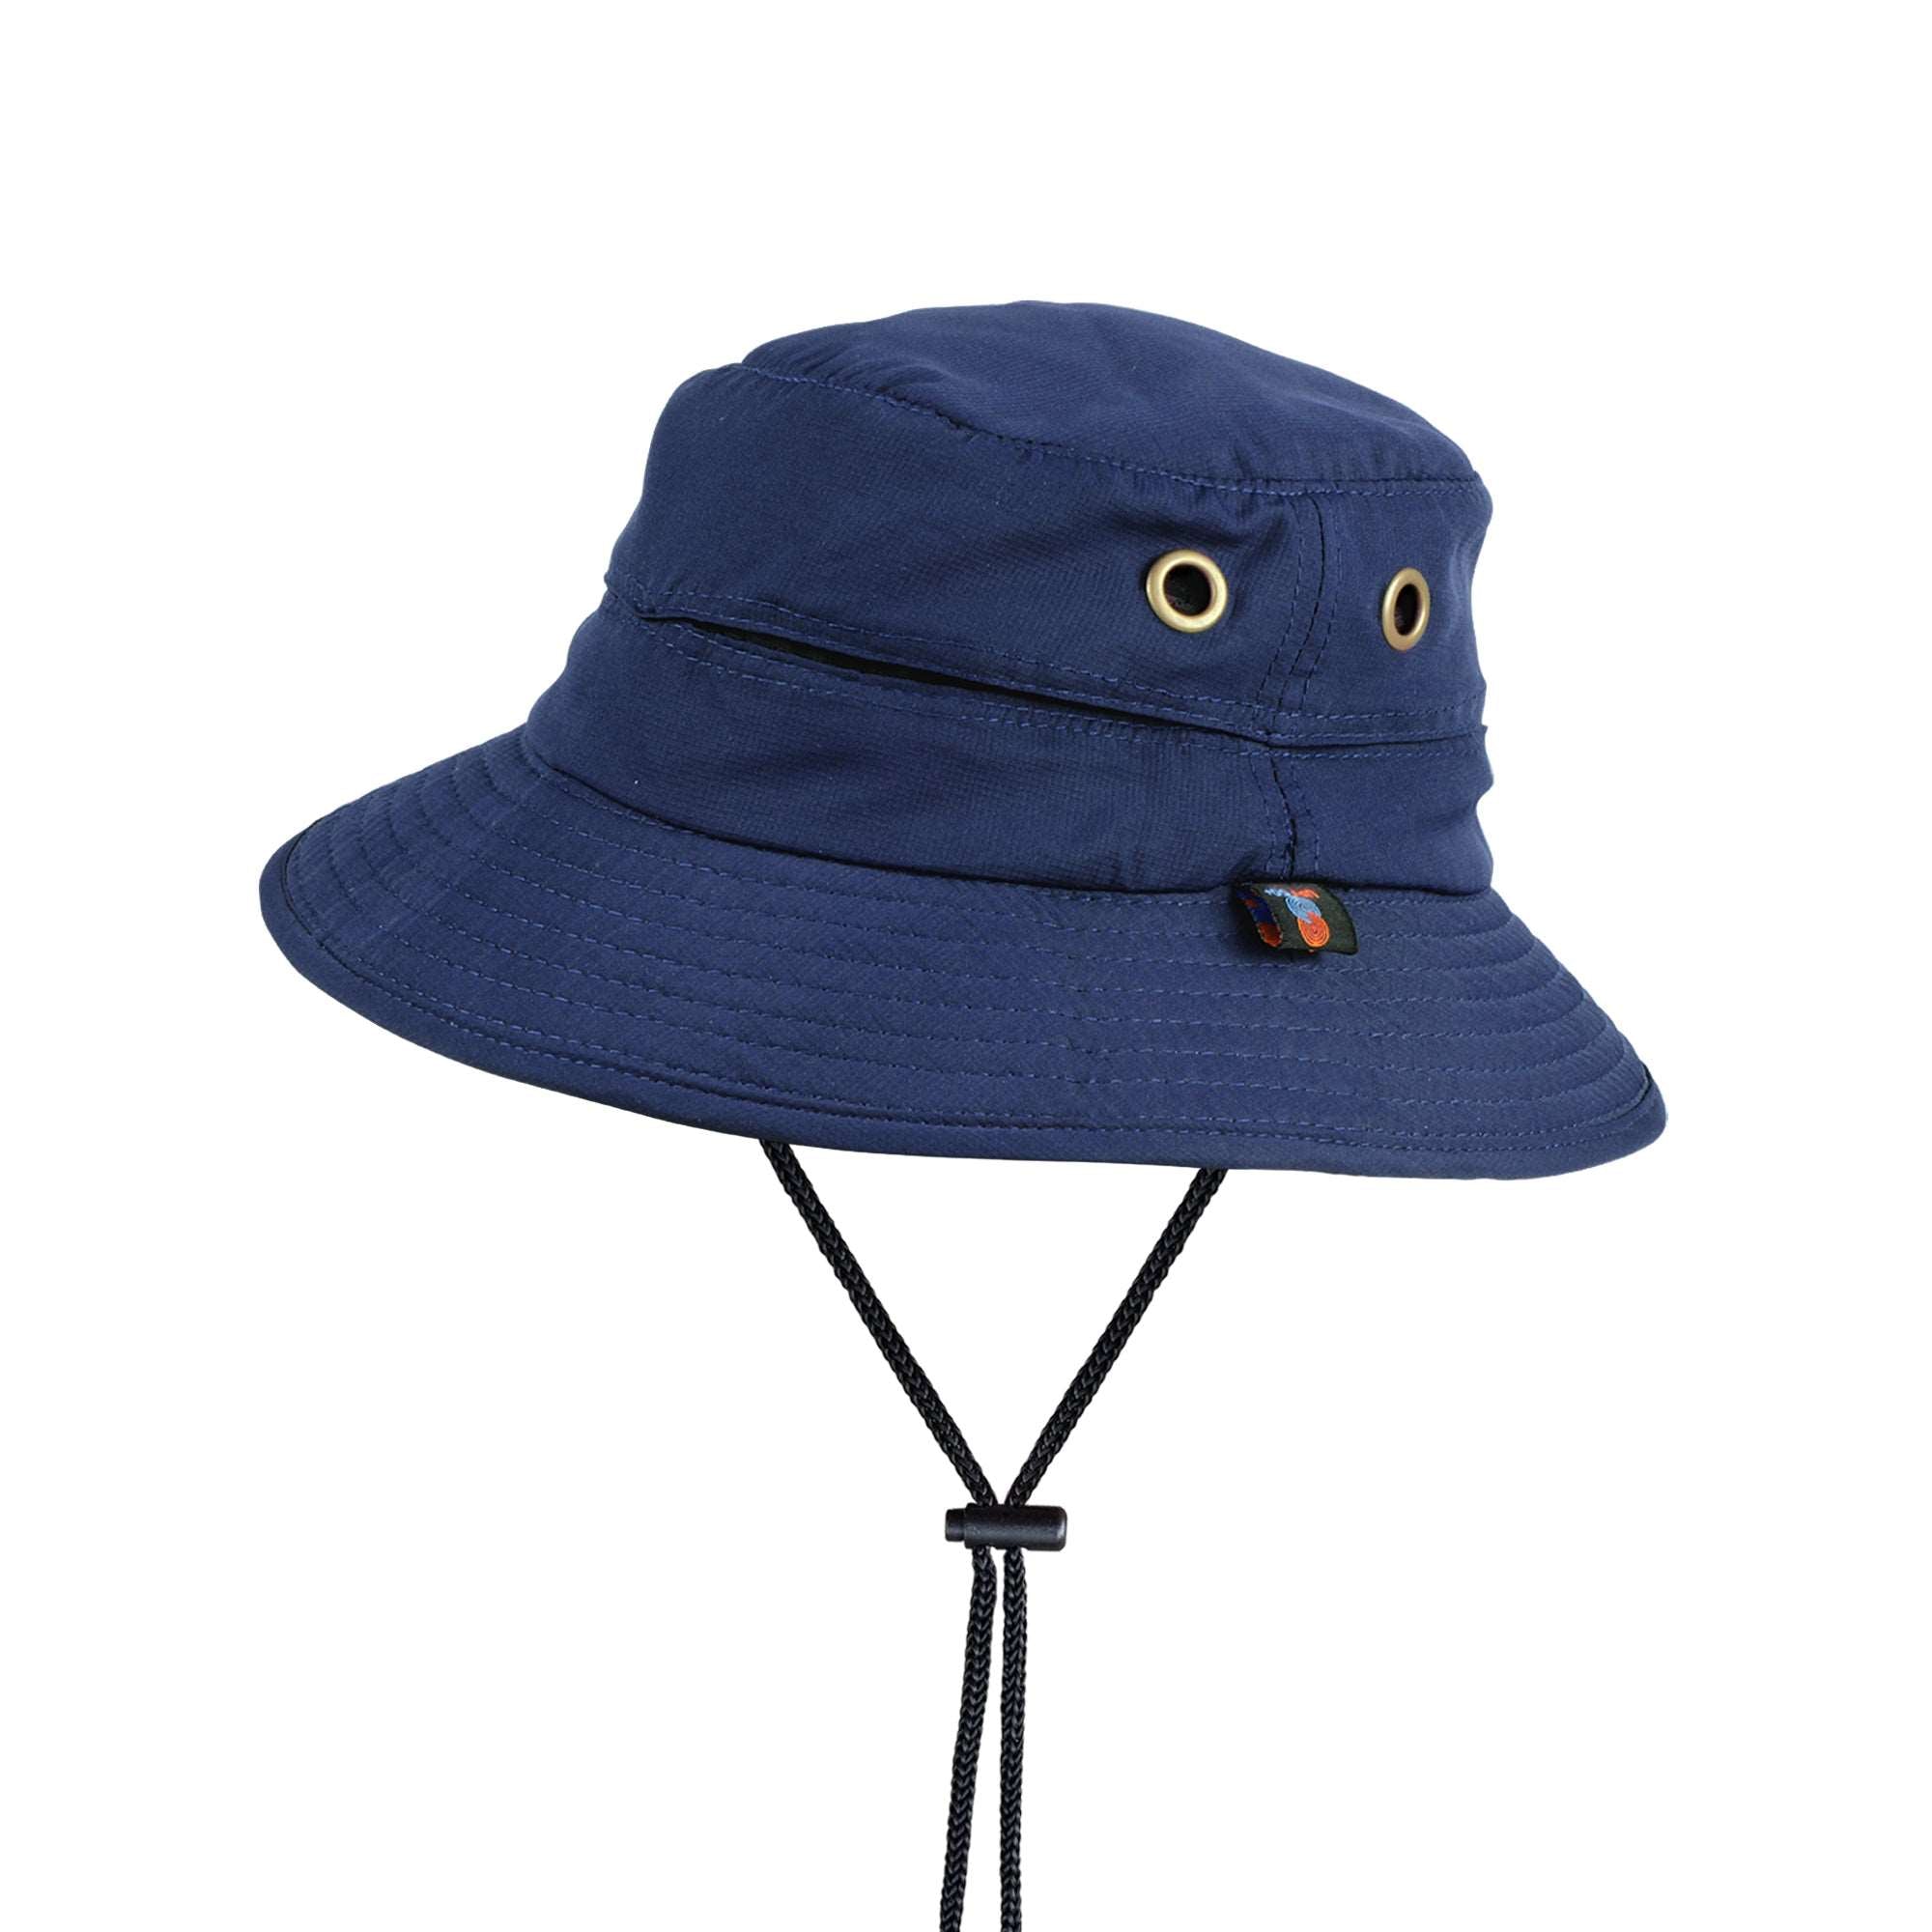 Bucket Hat Navy UPF50+ Australian sun hats, sun smart clothing, ladies sun protection hats uv, surf hats, sunhat, water sports hat, fishing clothing sun, surfing hats